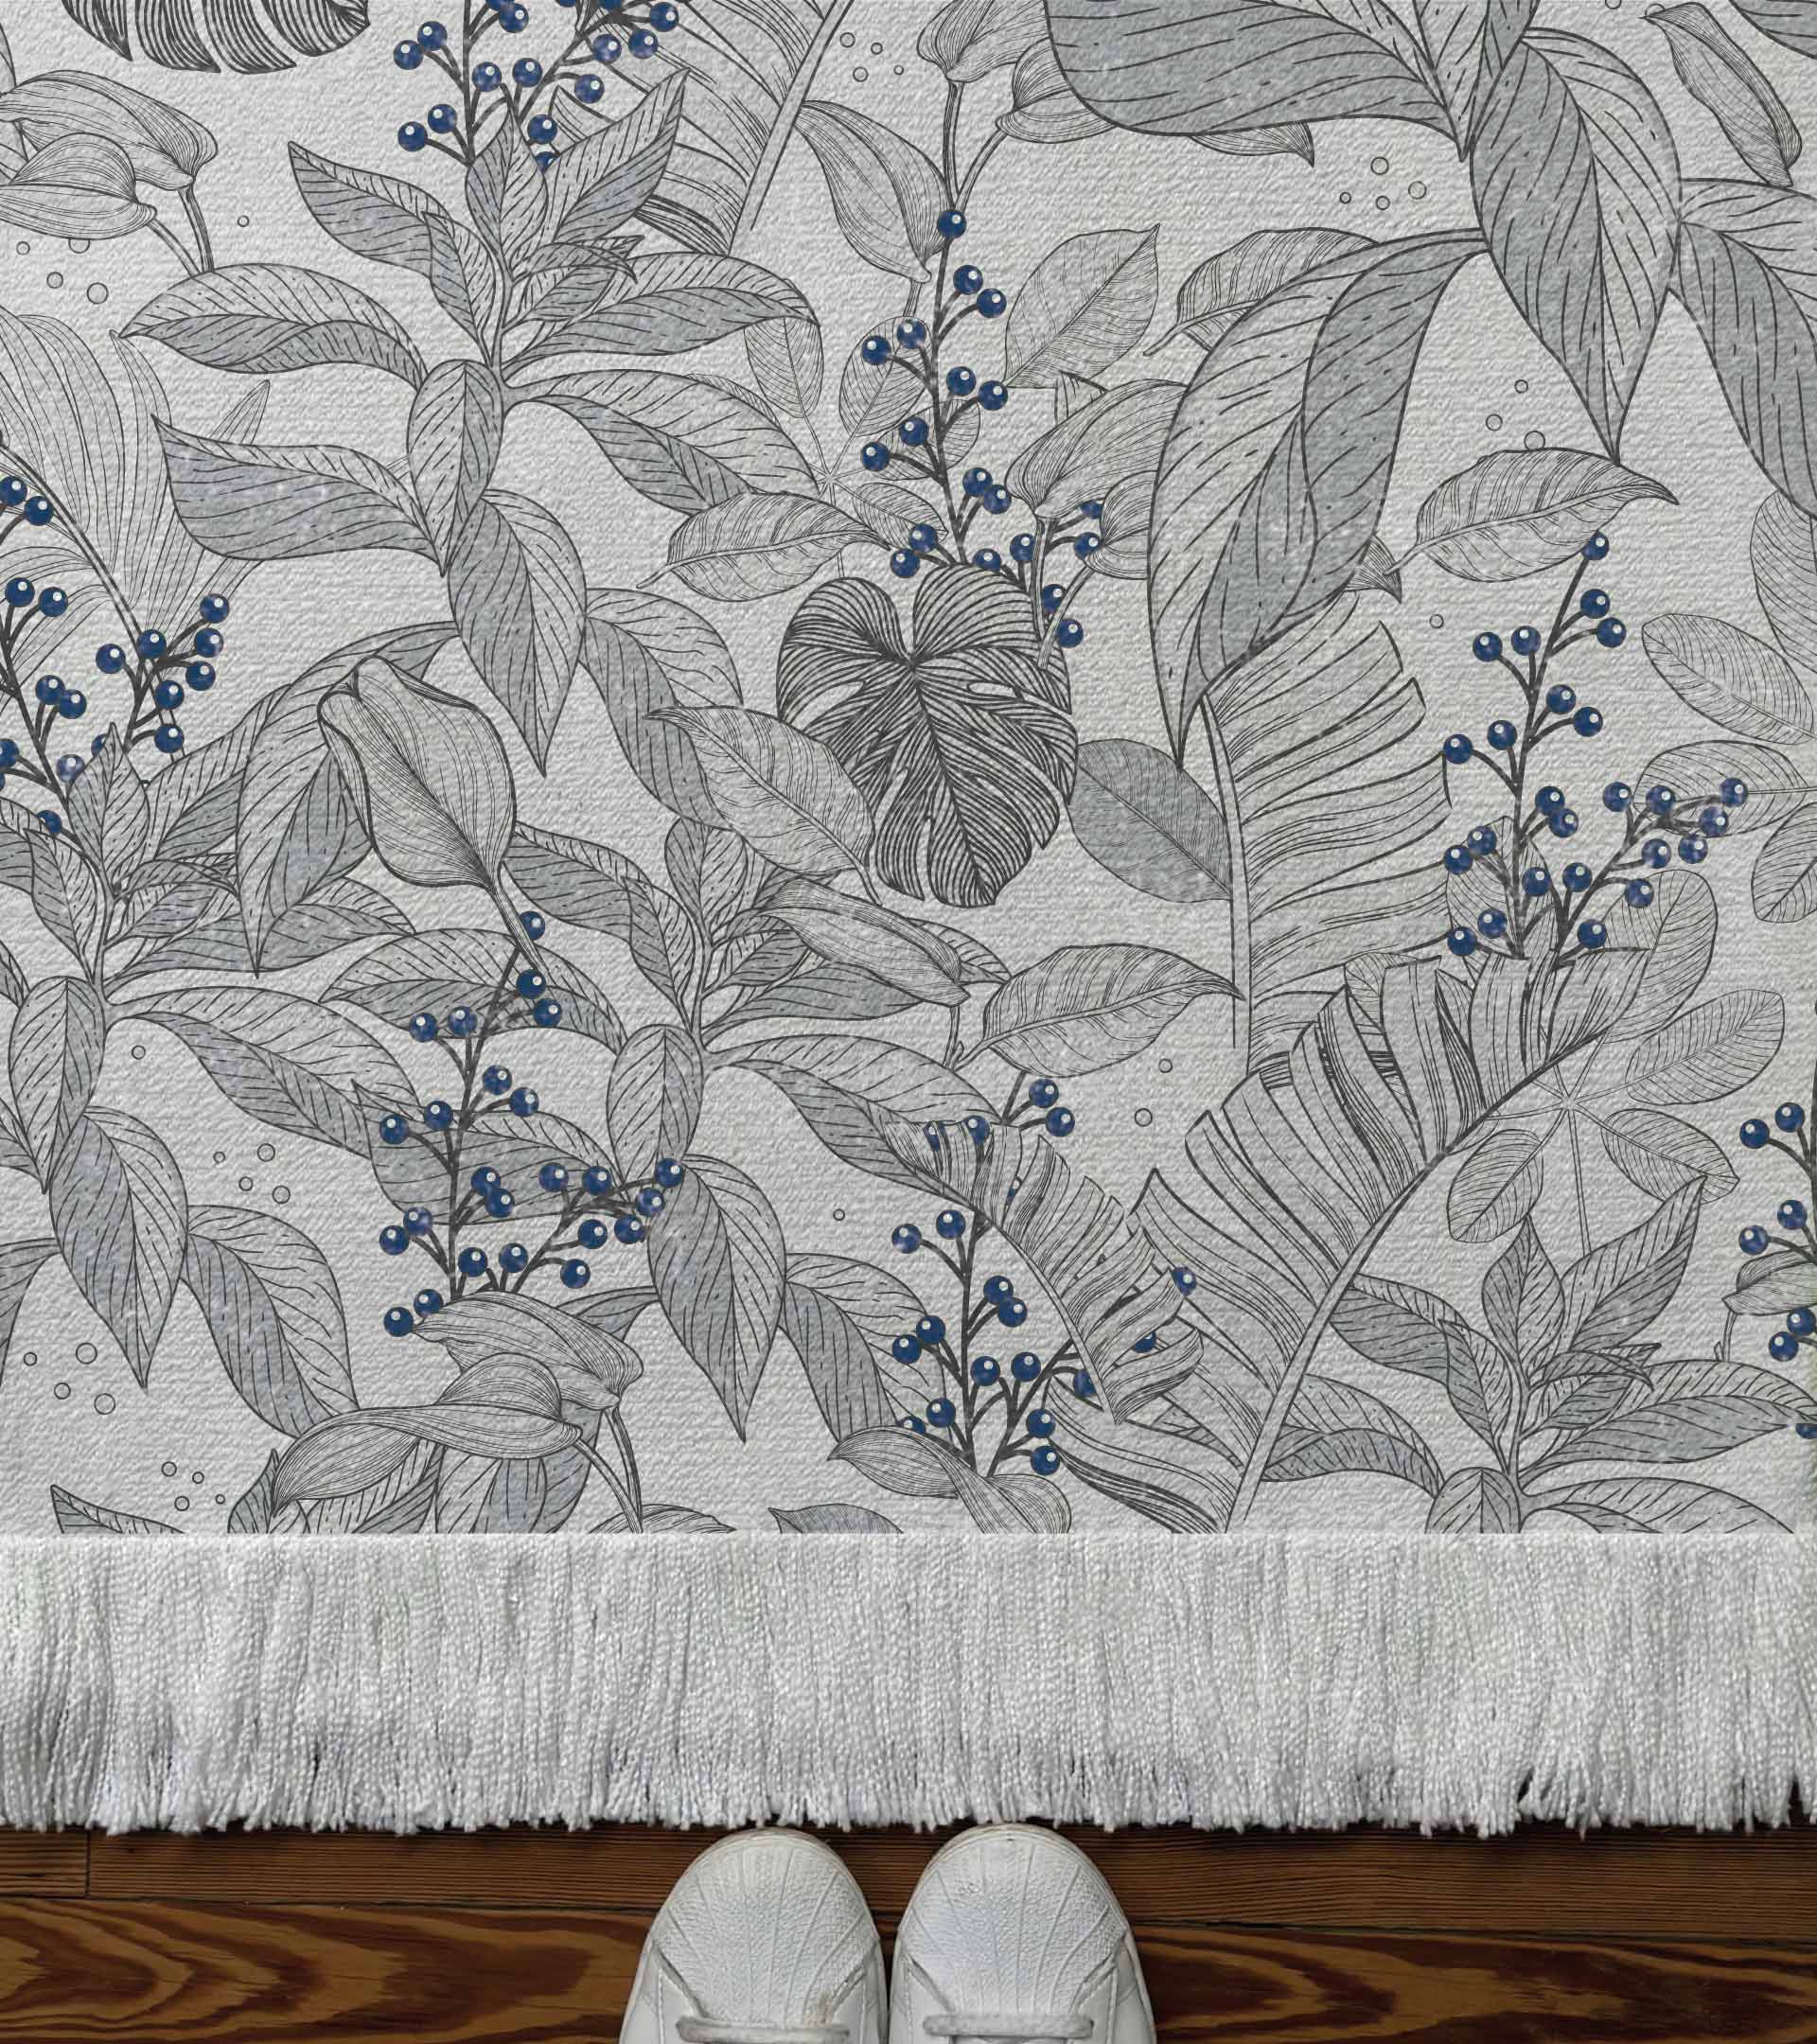 Alfombra tejida, diseño botanico. Hojas grandes decoro gris con frutos de color azul